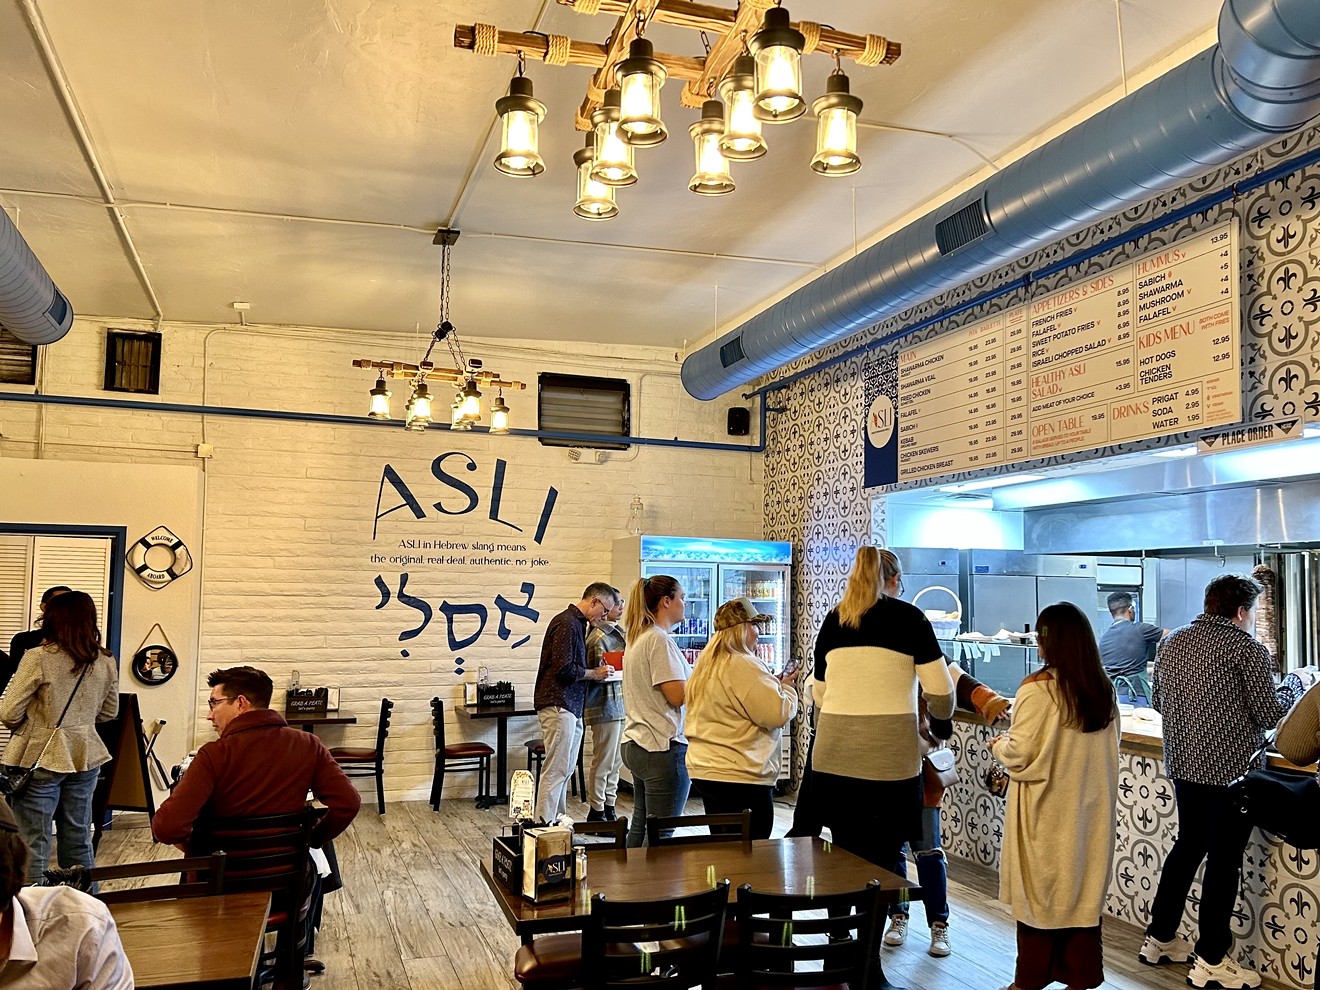 The regionally-inspired interior of ASLI Mediterranean Grill.